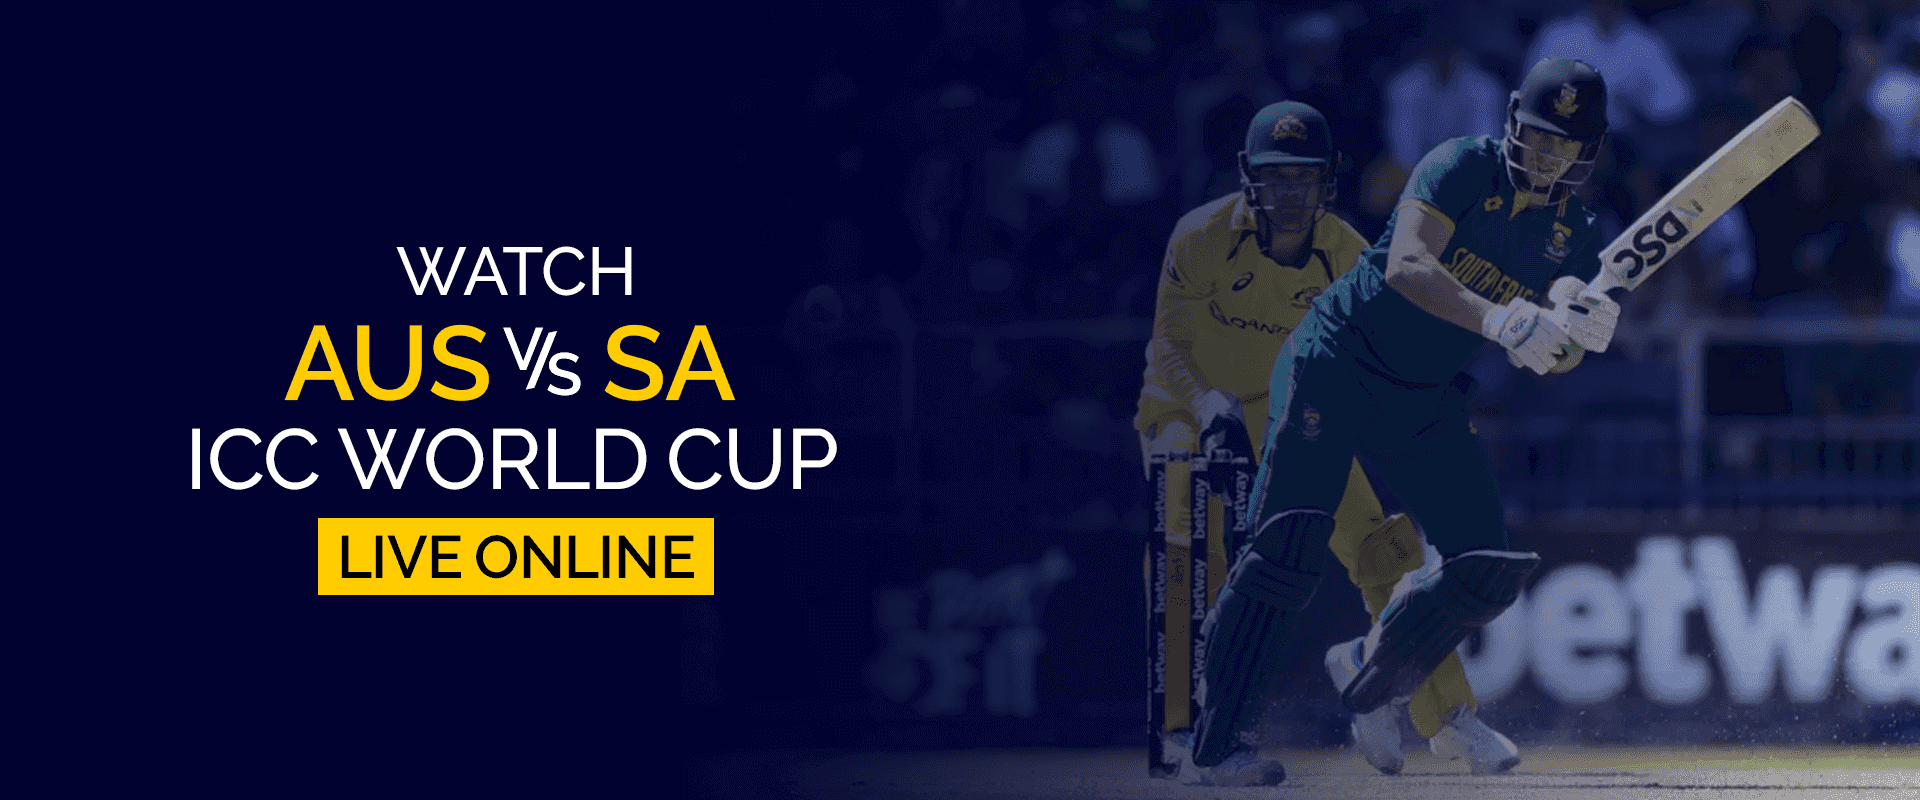 Se AUS vs SA ICC World Cup live online